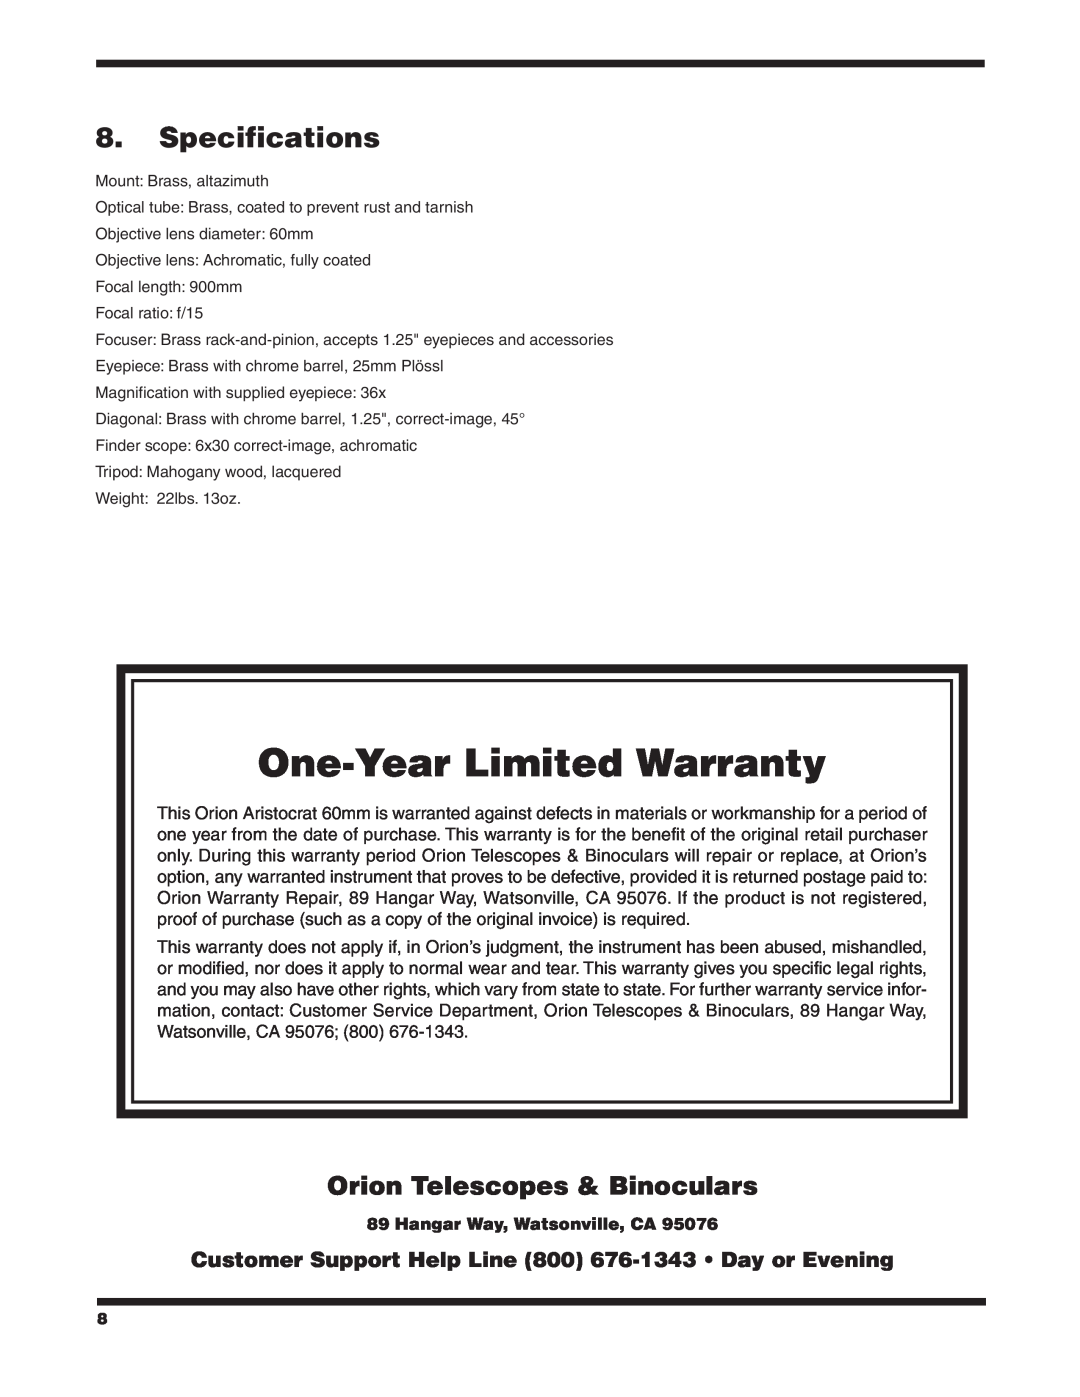 Orion 9800 Specifications, Orion Telescopes & Binoculars, Hangar Way, Watsonville, CA, One-Year Limited Warranty 